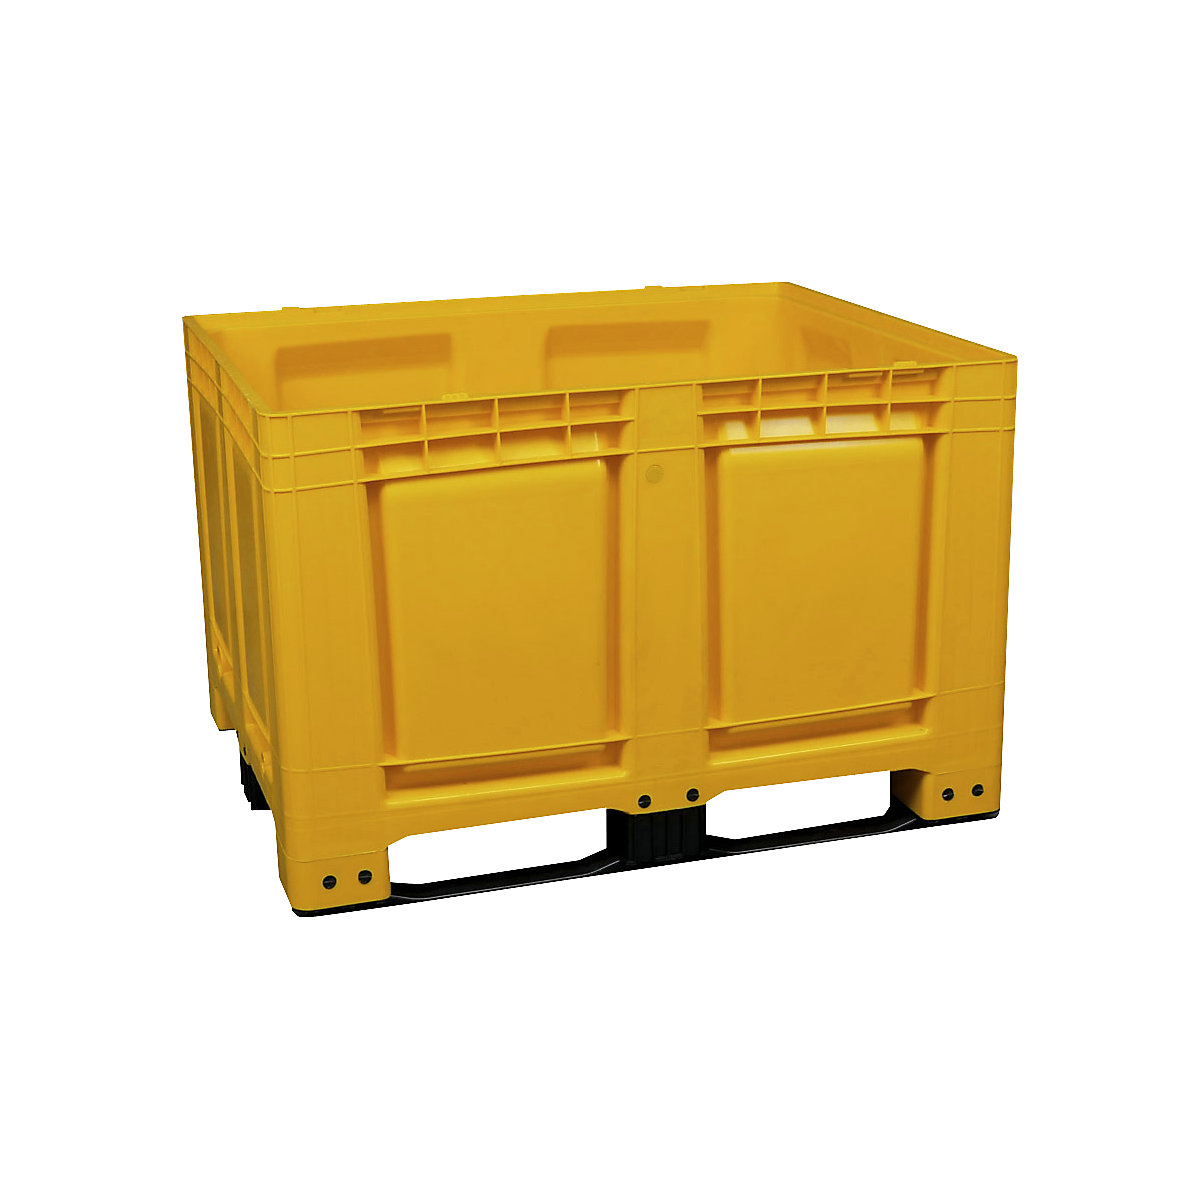 Palletcontainer, van HDPE, l x b x h = 1200 x 1000 x 790 mm, 3 lopers, gesloten, geel-9